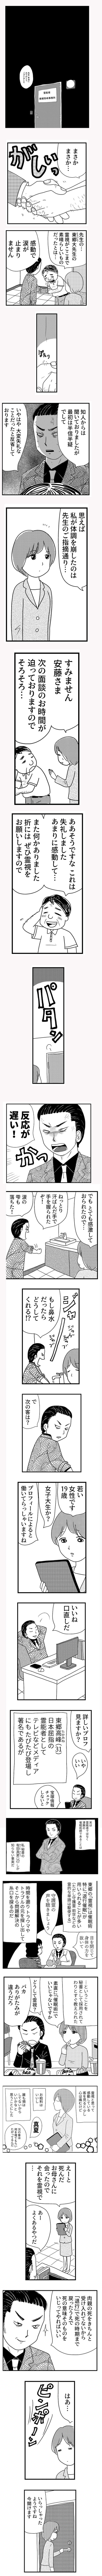 【全ページ公開】倉田真由美のミリテリー漫画『凶母 』第1話から戦慄のラスト！の画像2